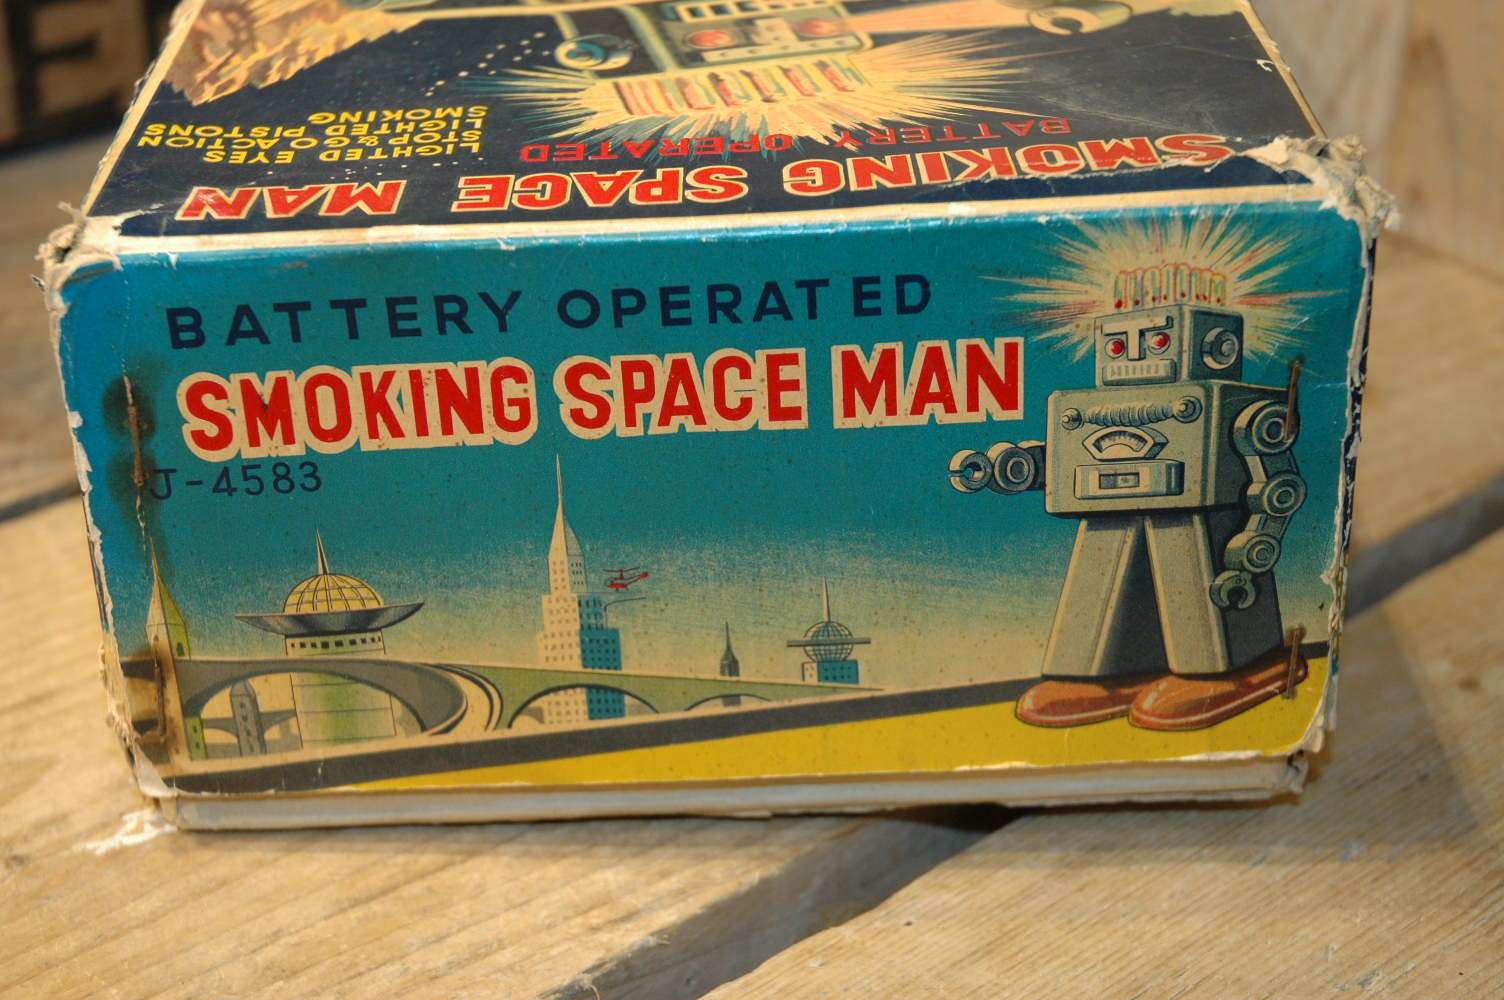 Linemar Toys - Smoking Space Man